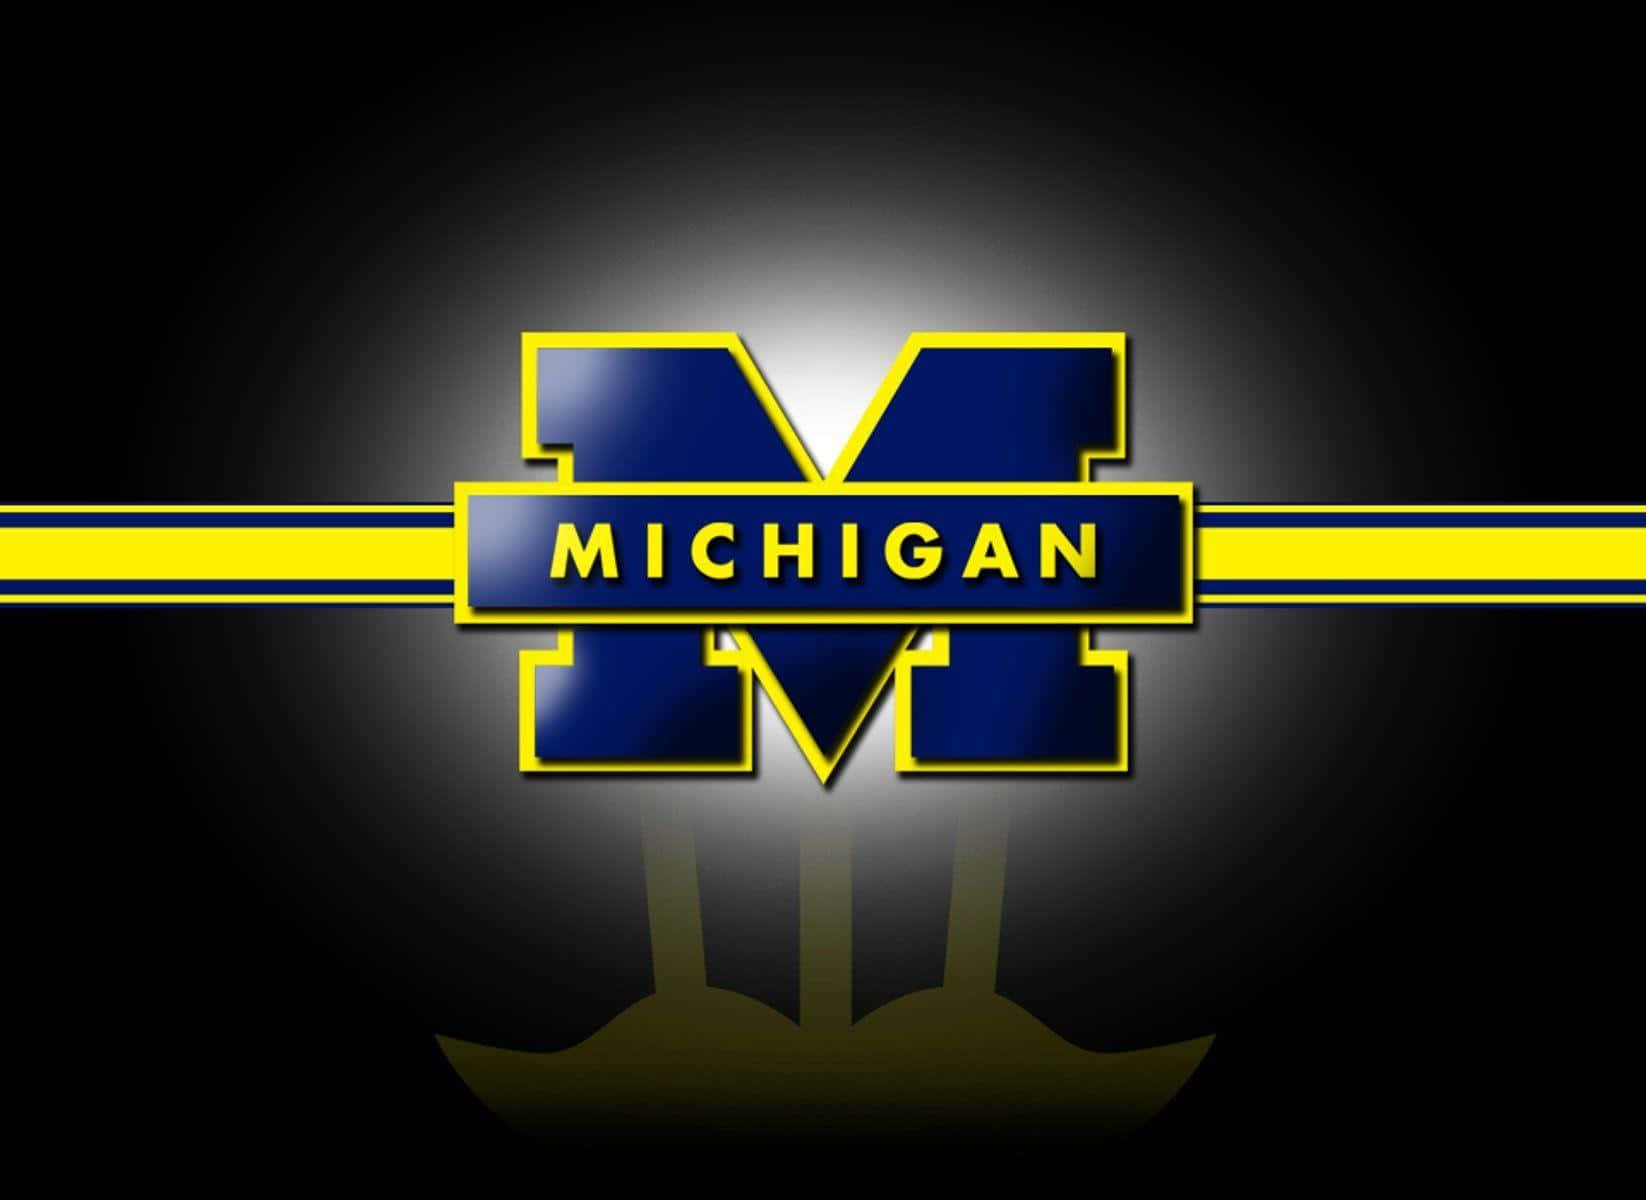 Aequipe De Futebol Da Universidade De Michigan Está Pronta Para Ação. Papel de Parede